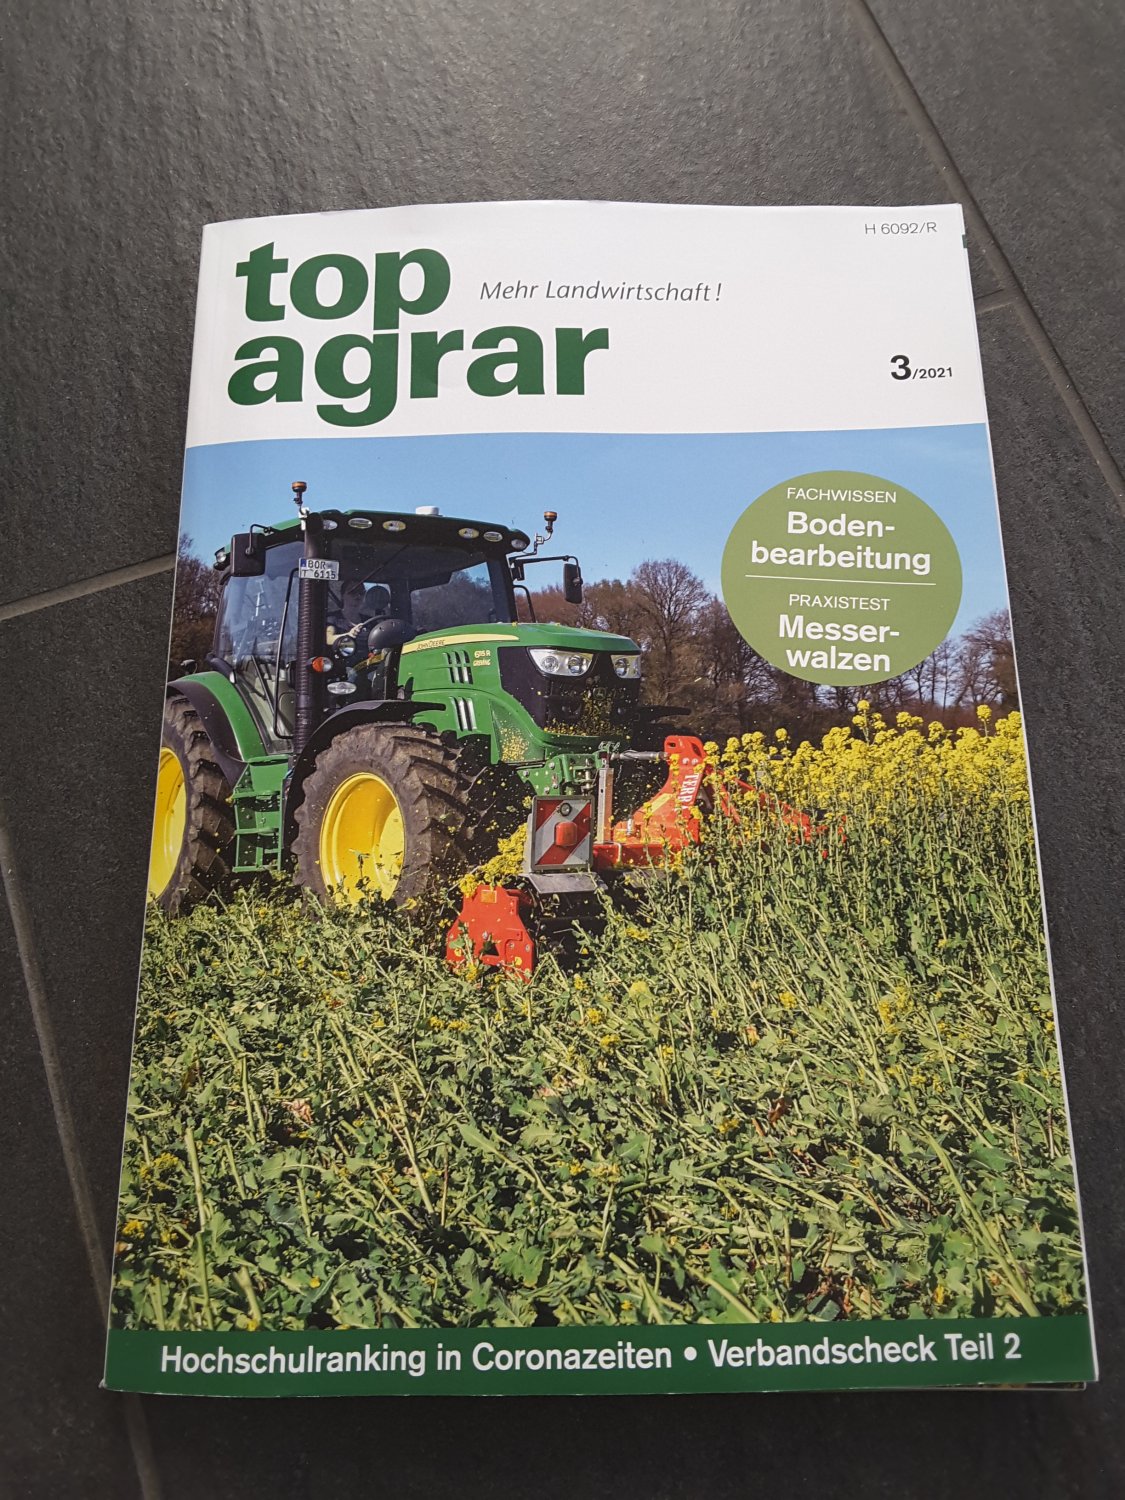 Top agrar- Mehr Landwirtschaft- 3/ 2921“ – Buch gebraucht kaufen –  A02uscLB01ZZD